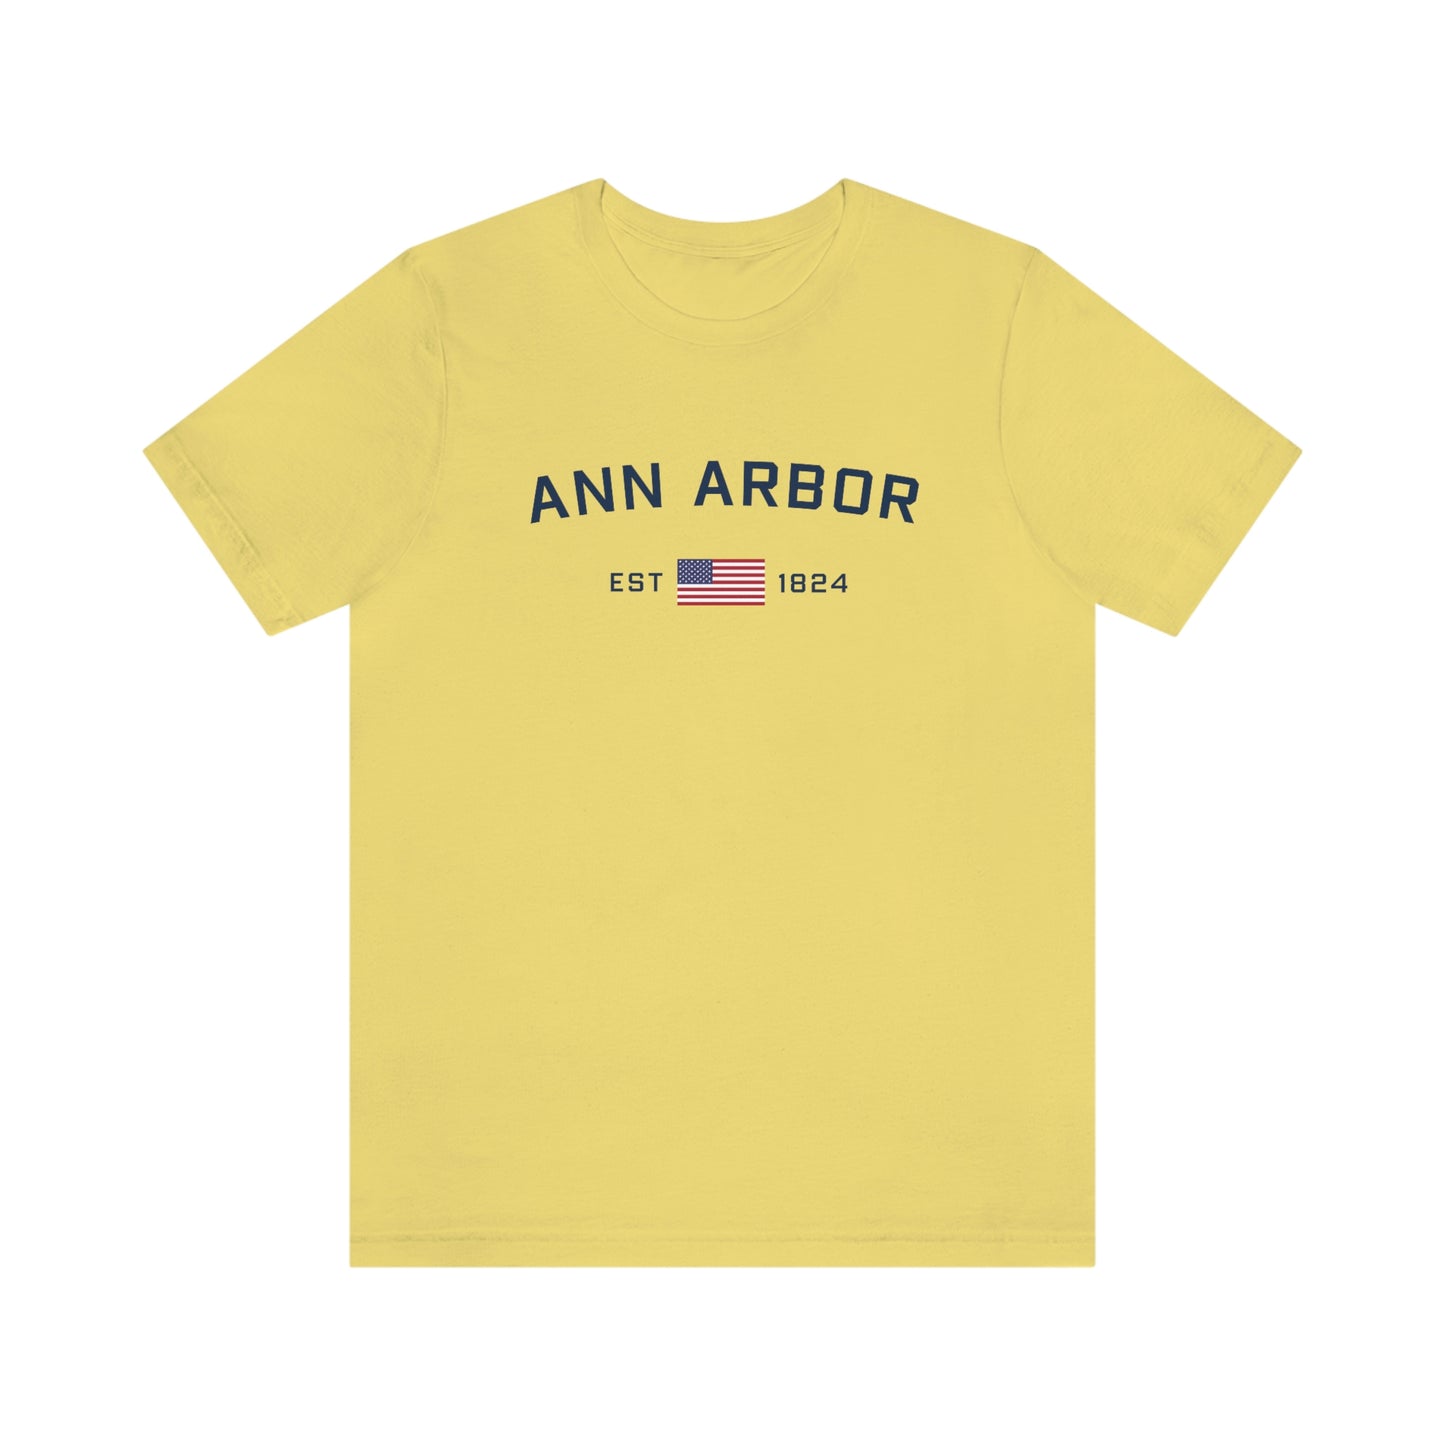 'Ann Arbor EST 1824' T-Shirt | Unisex Standard Fit